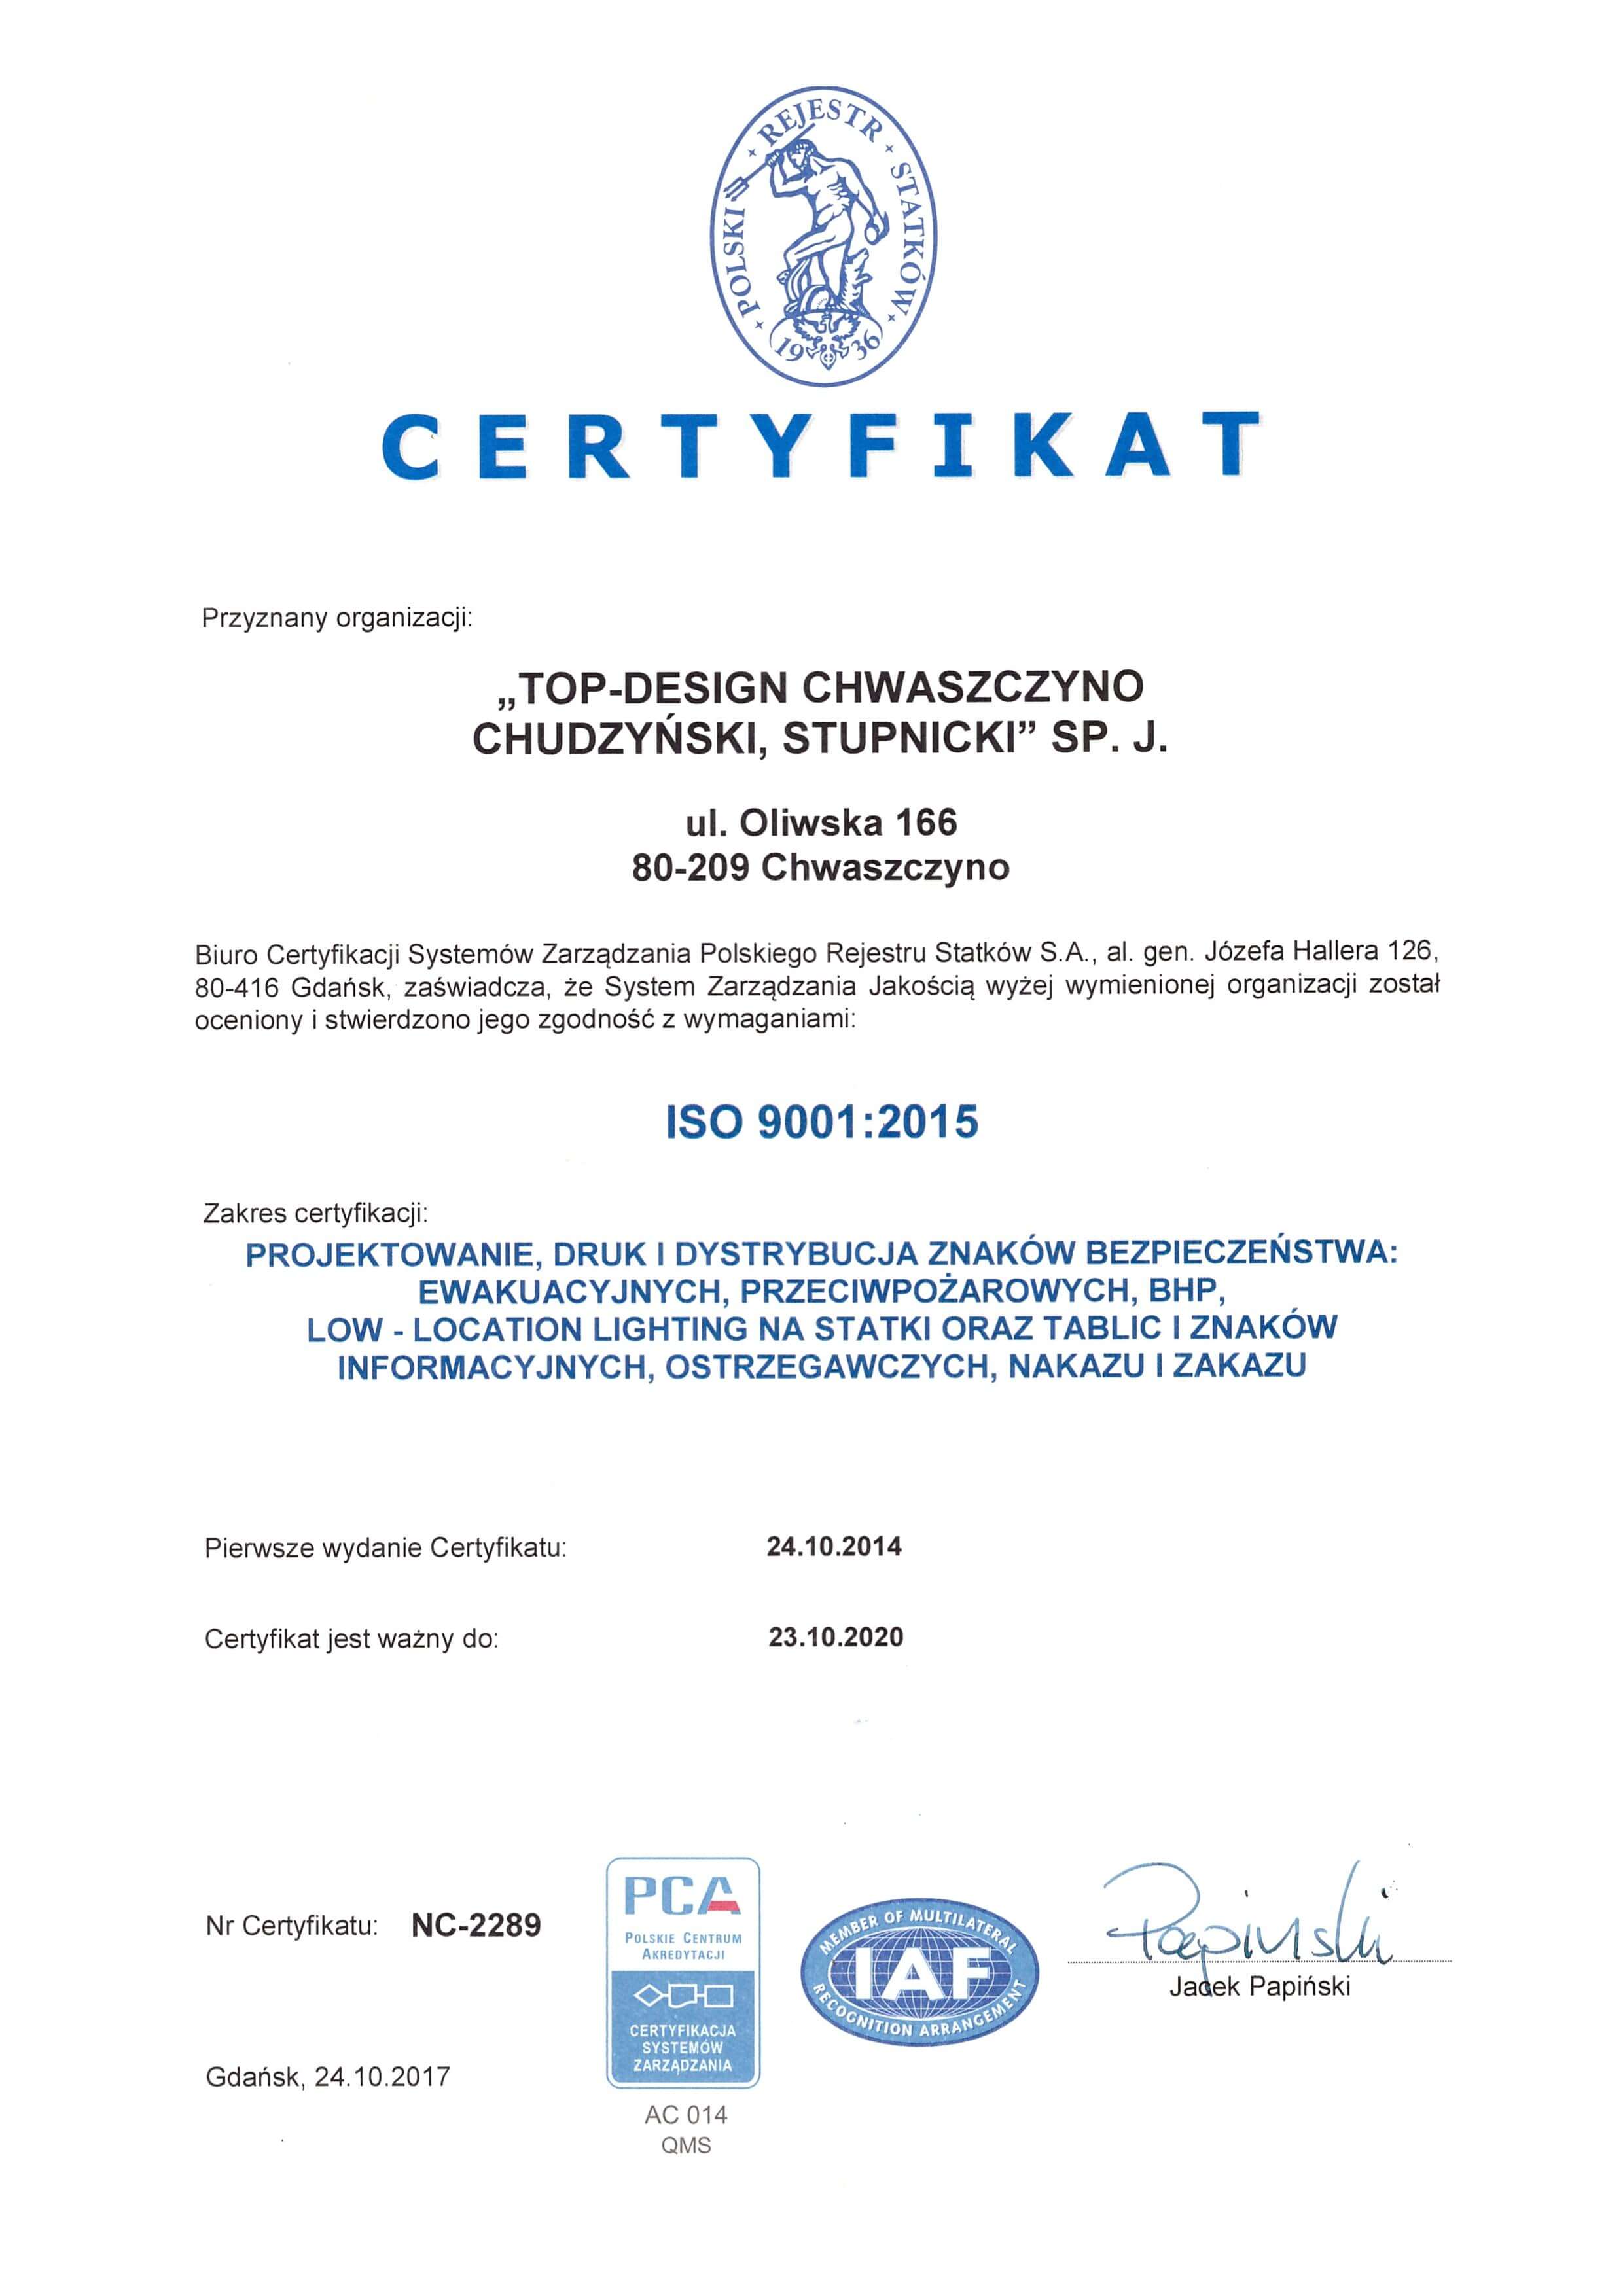 Międzynarodowy Certyfikat Systemu Zarządzania Jakością ISO 9001:2015 wydany przez PRS z akredytacją PCA